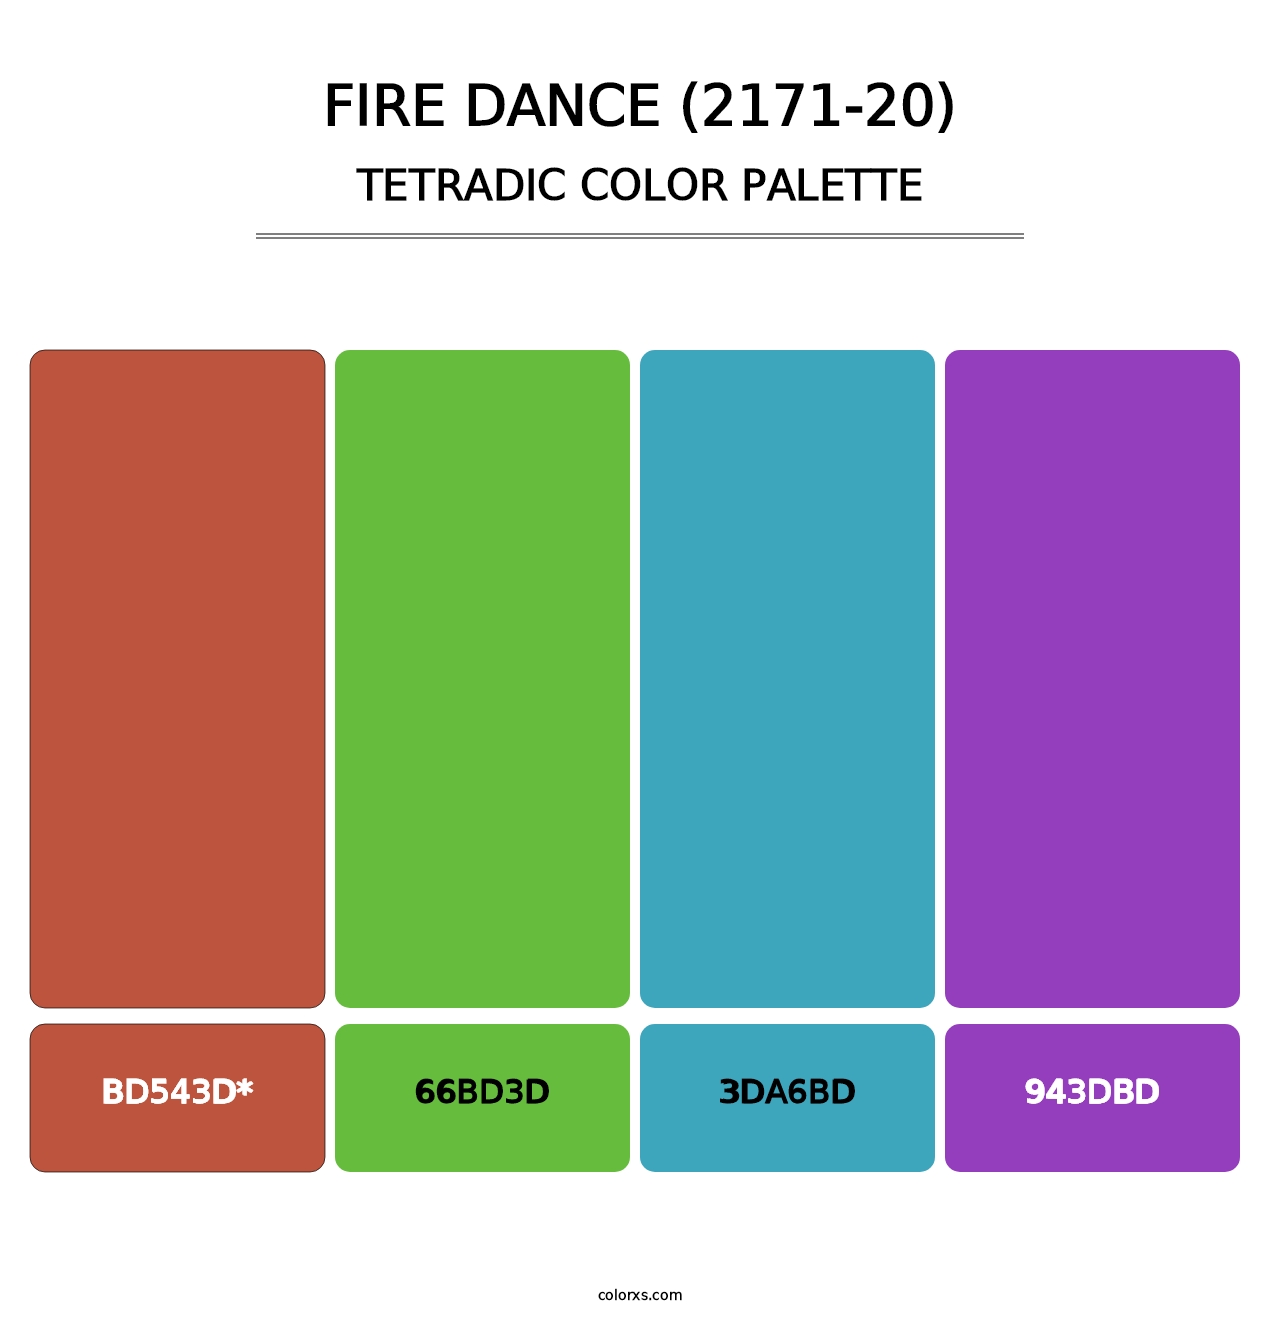 Fire Dance (2171-20) - Tetradic Color Palette